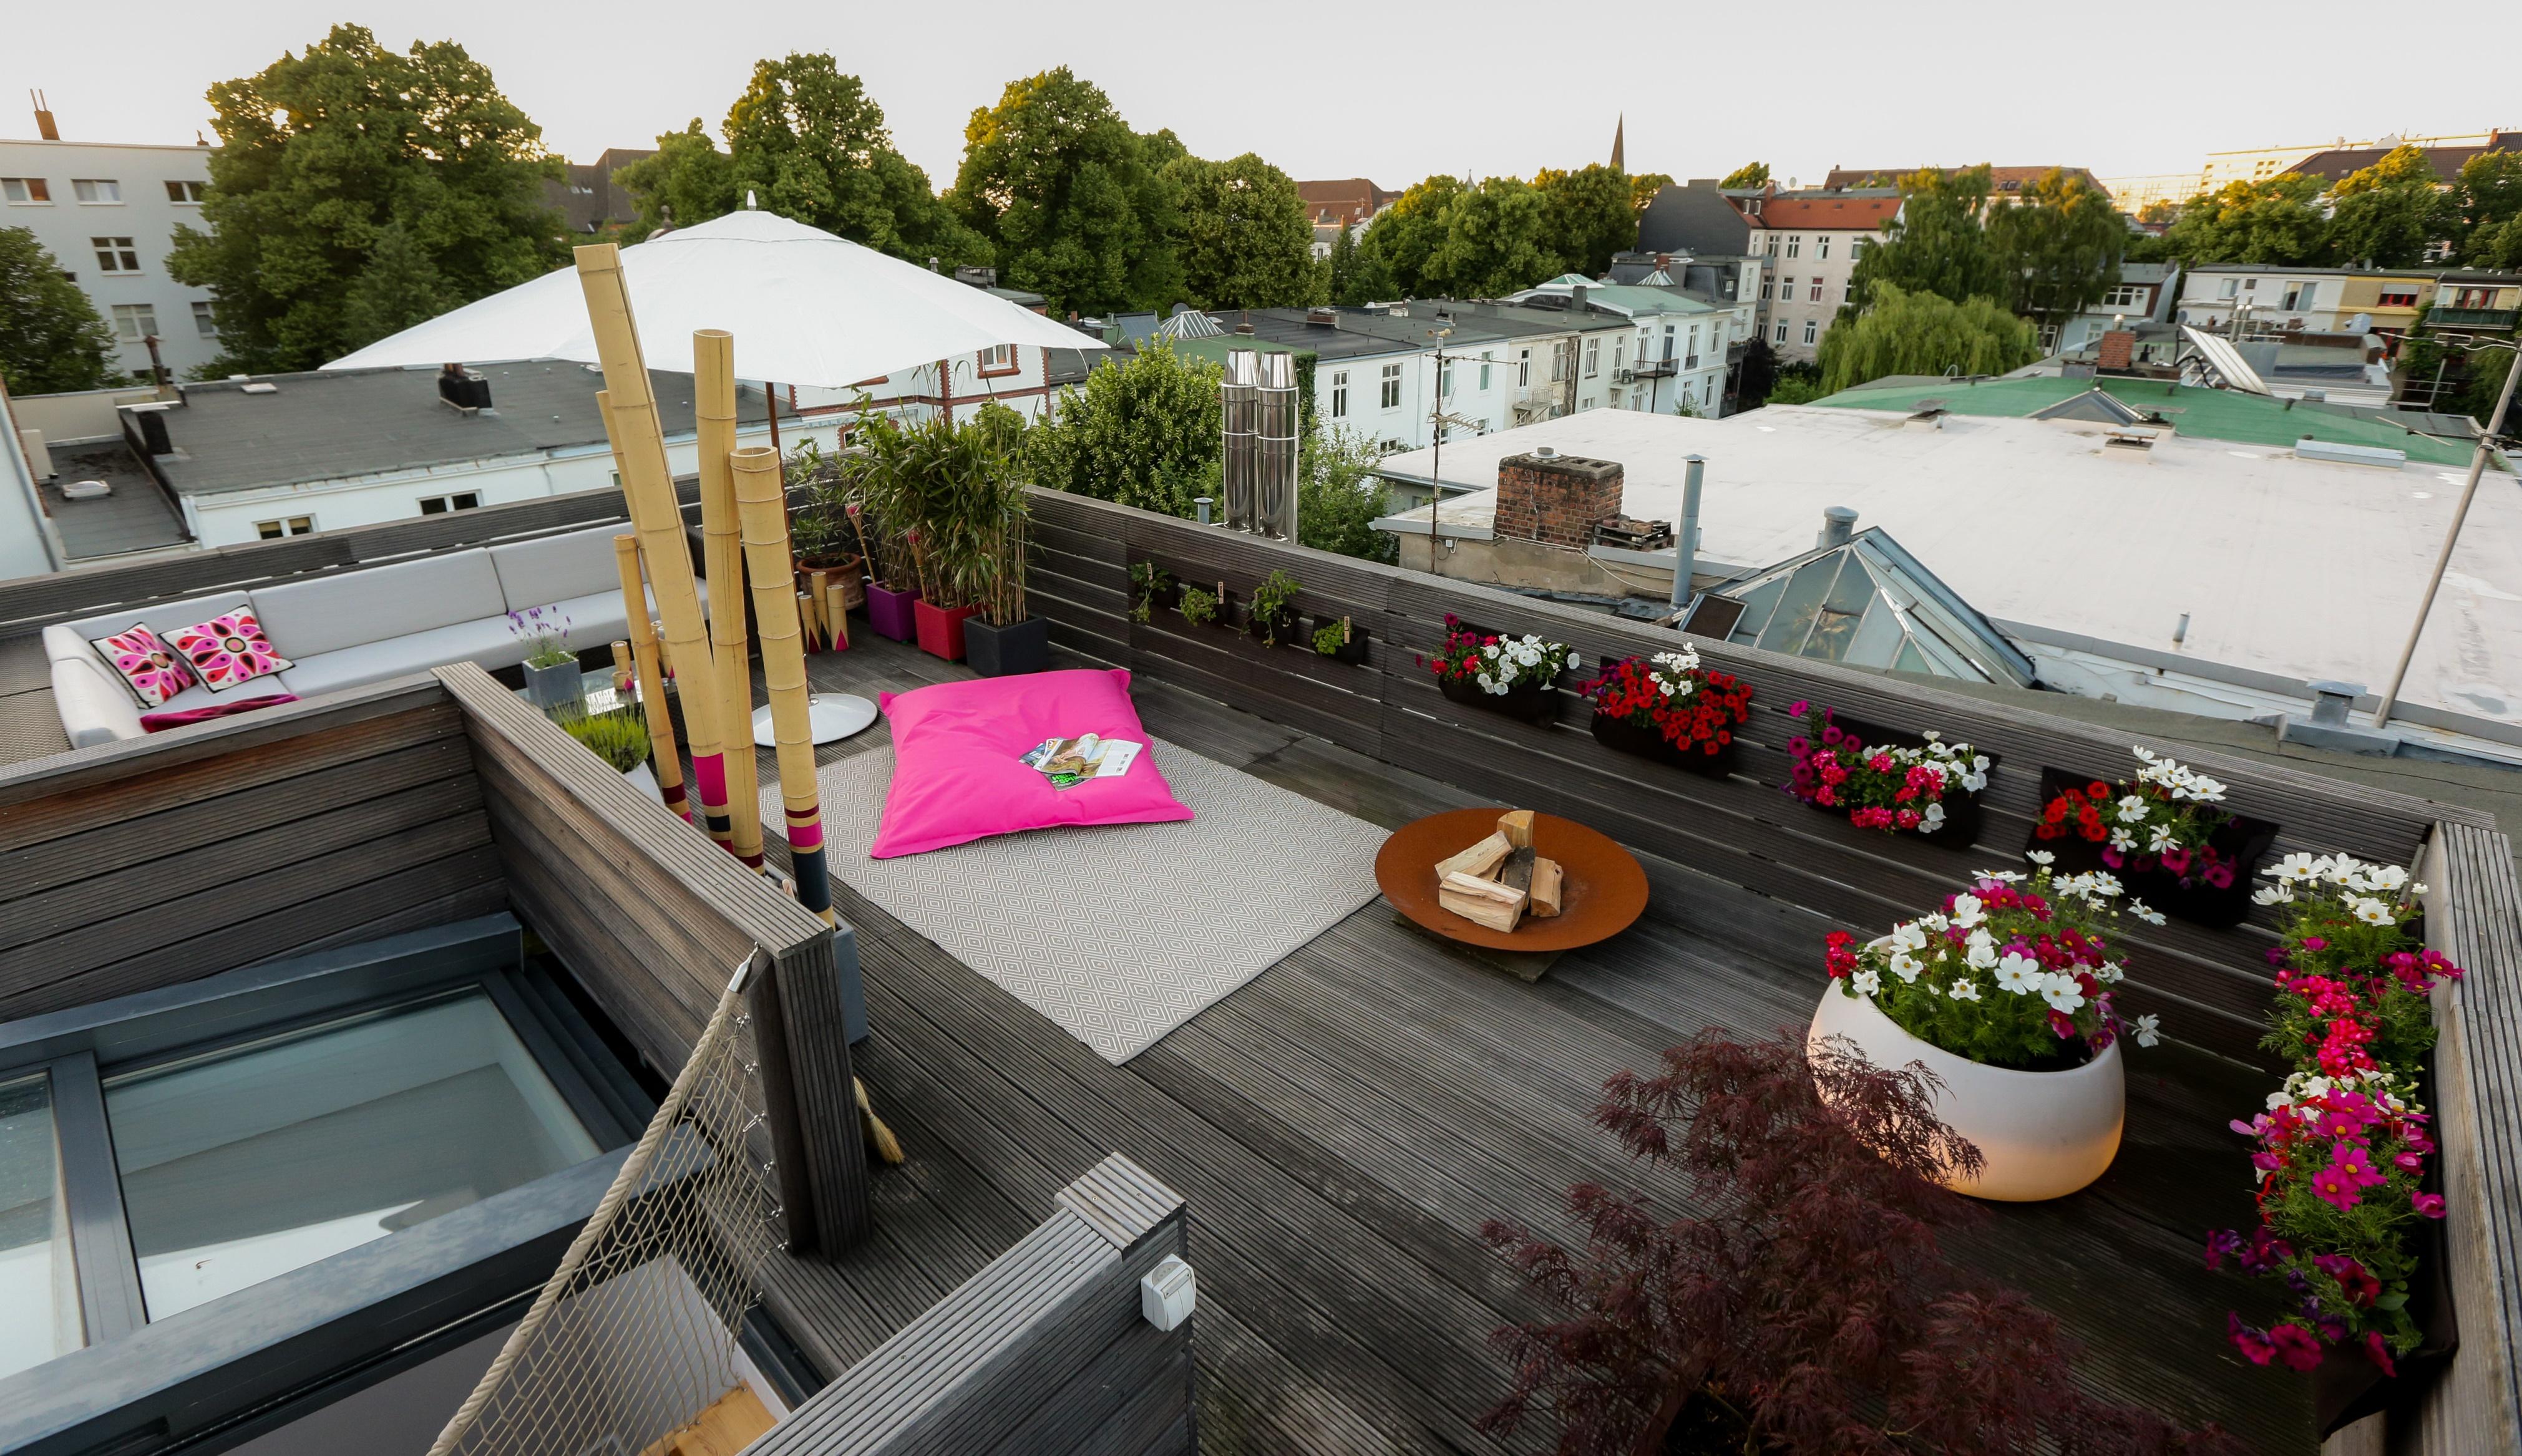 Dachterrassen Gestaltung #beistelltisch #terrasse #teppich #kissen ©Die Balkongestalter / Ulrich Perrey